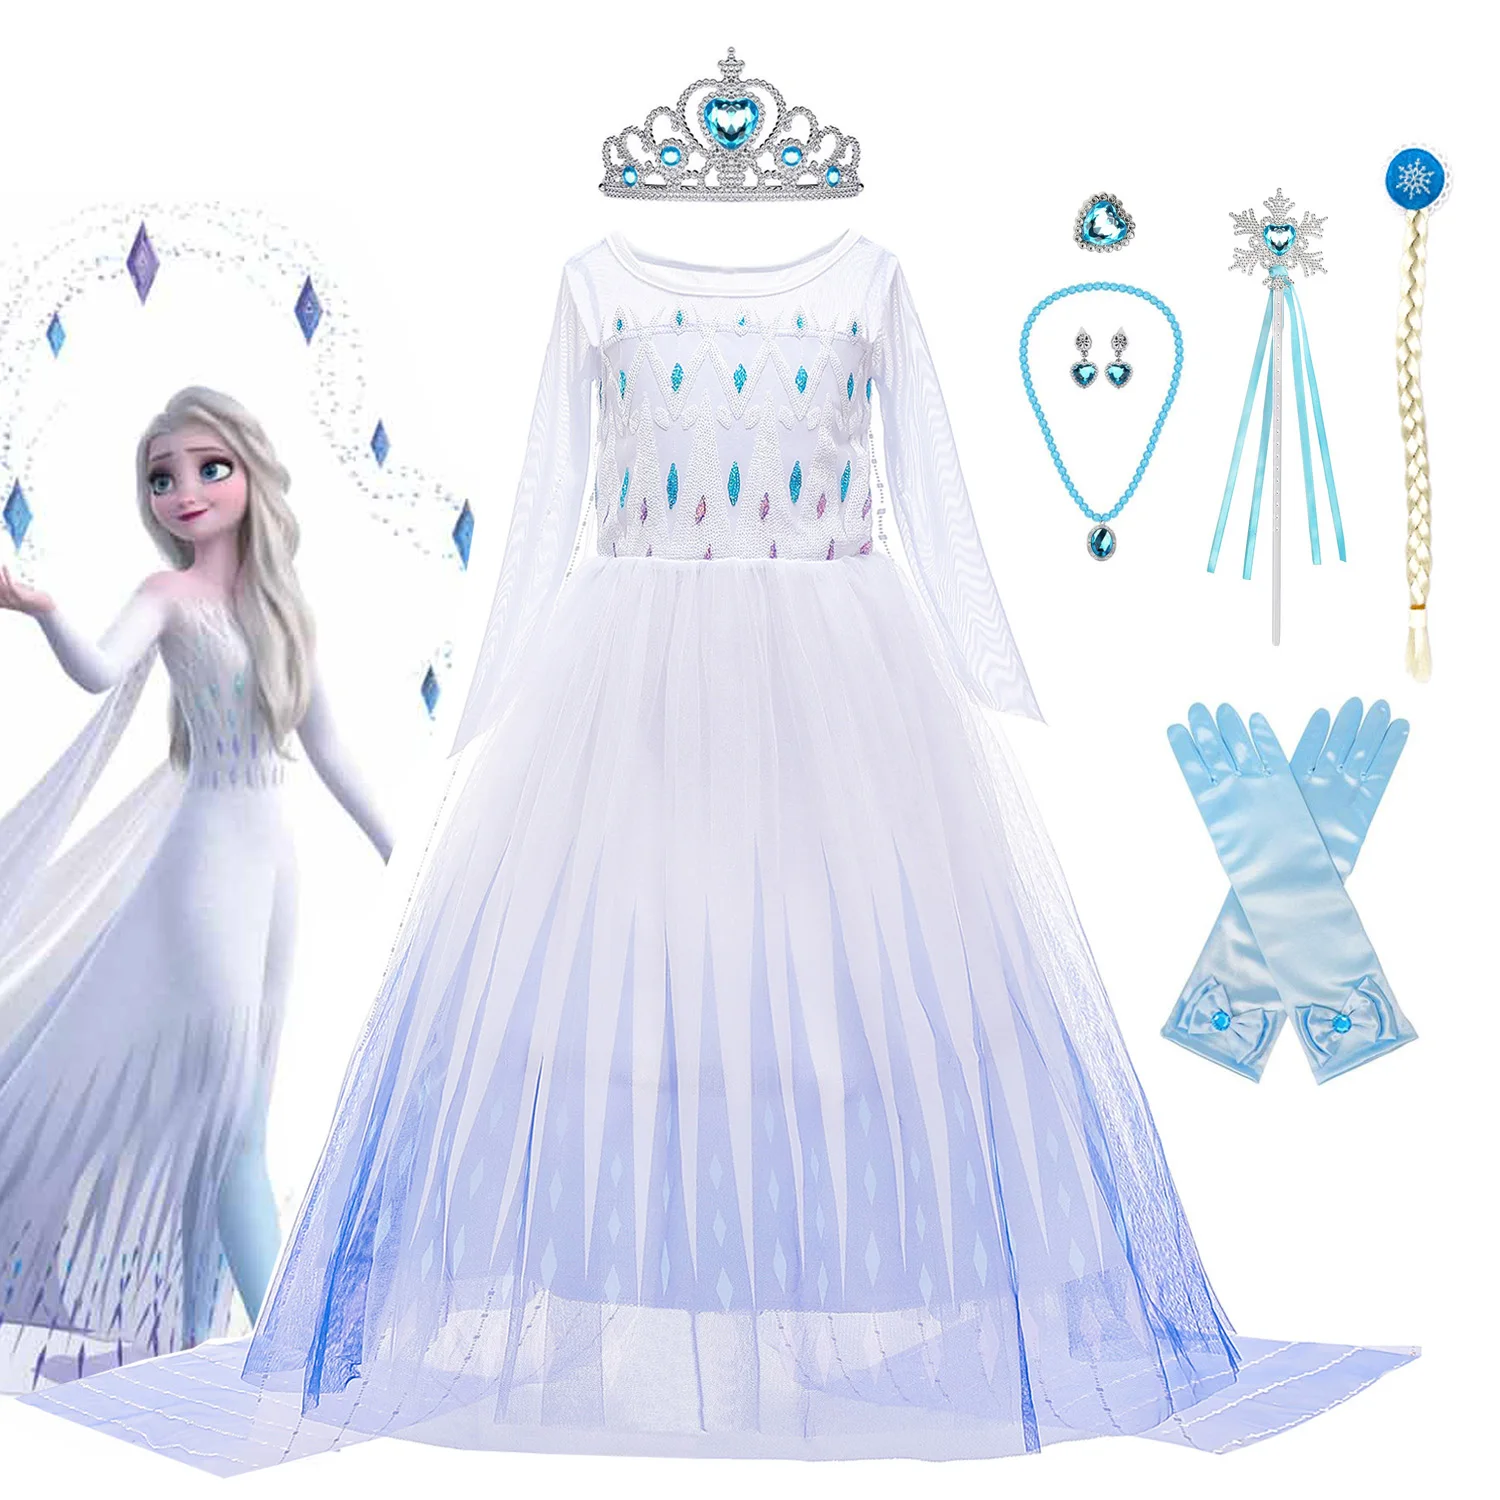 

Костюм принцессы Эльзы для девочек, Белое Бальное Платье принцессы «Холодное сердце 2», костюм на день рождения, Карнавальная одежда для кос...